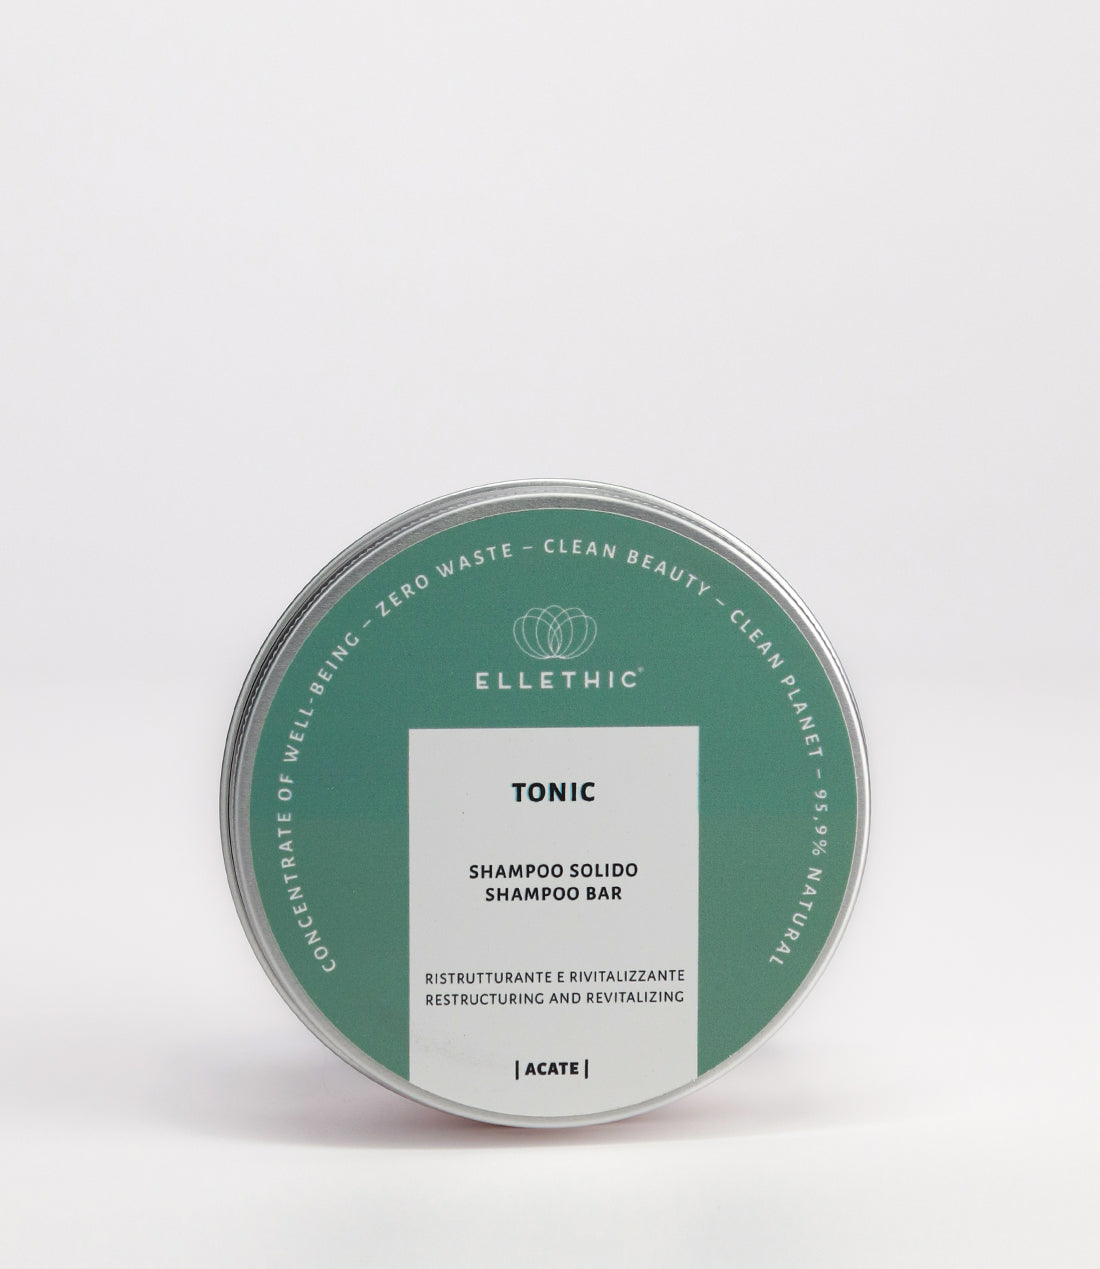 Tonic shampoo solido ristrutturante - Acate